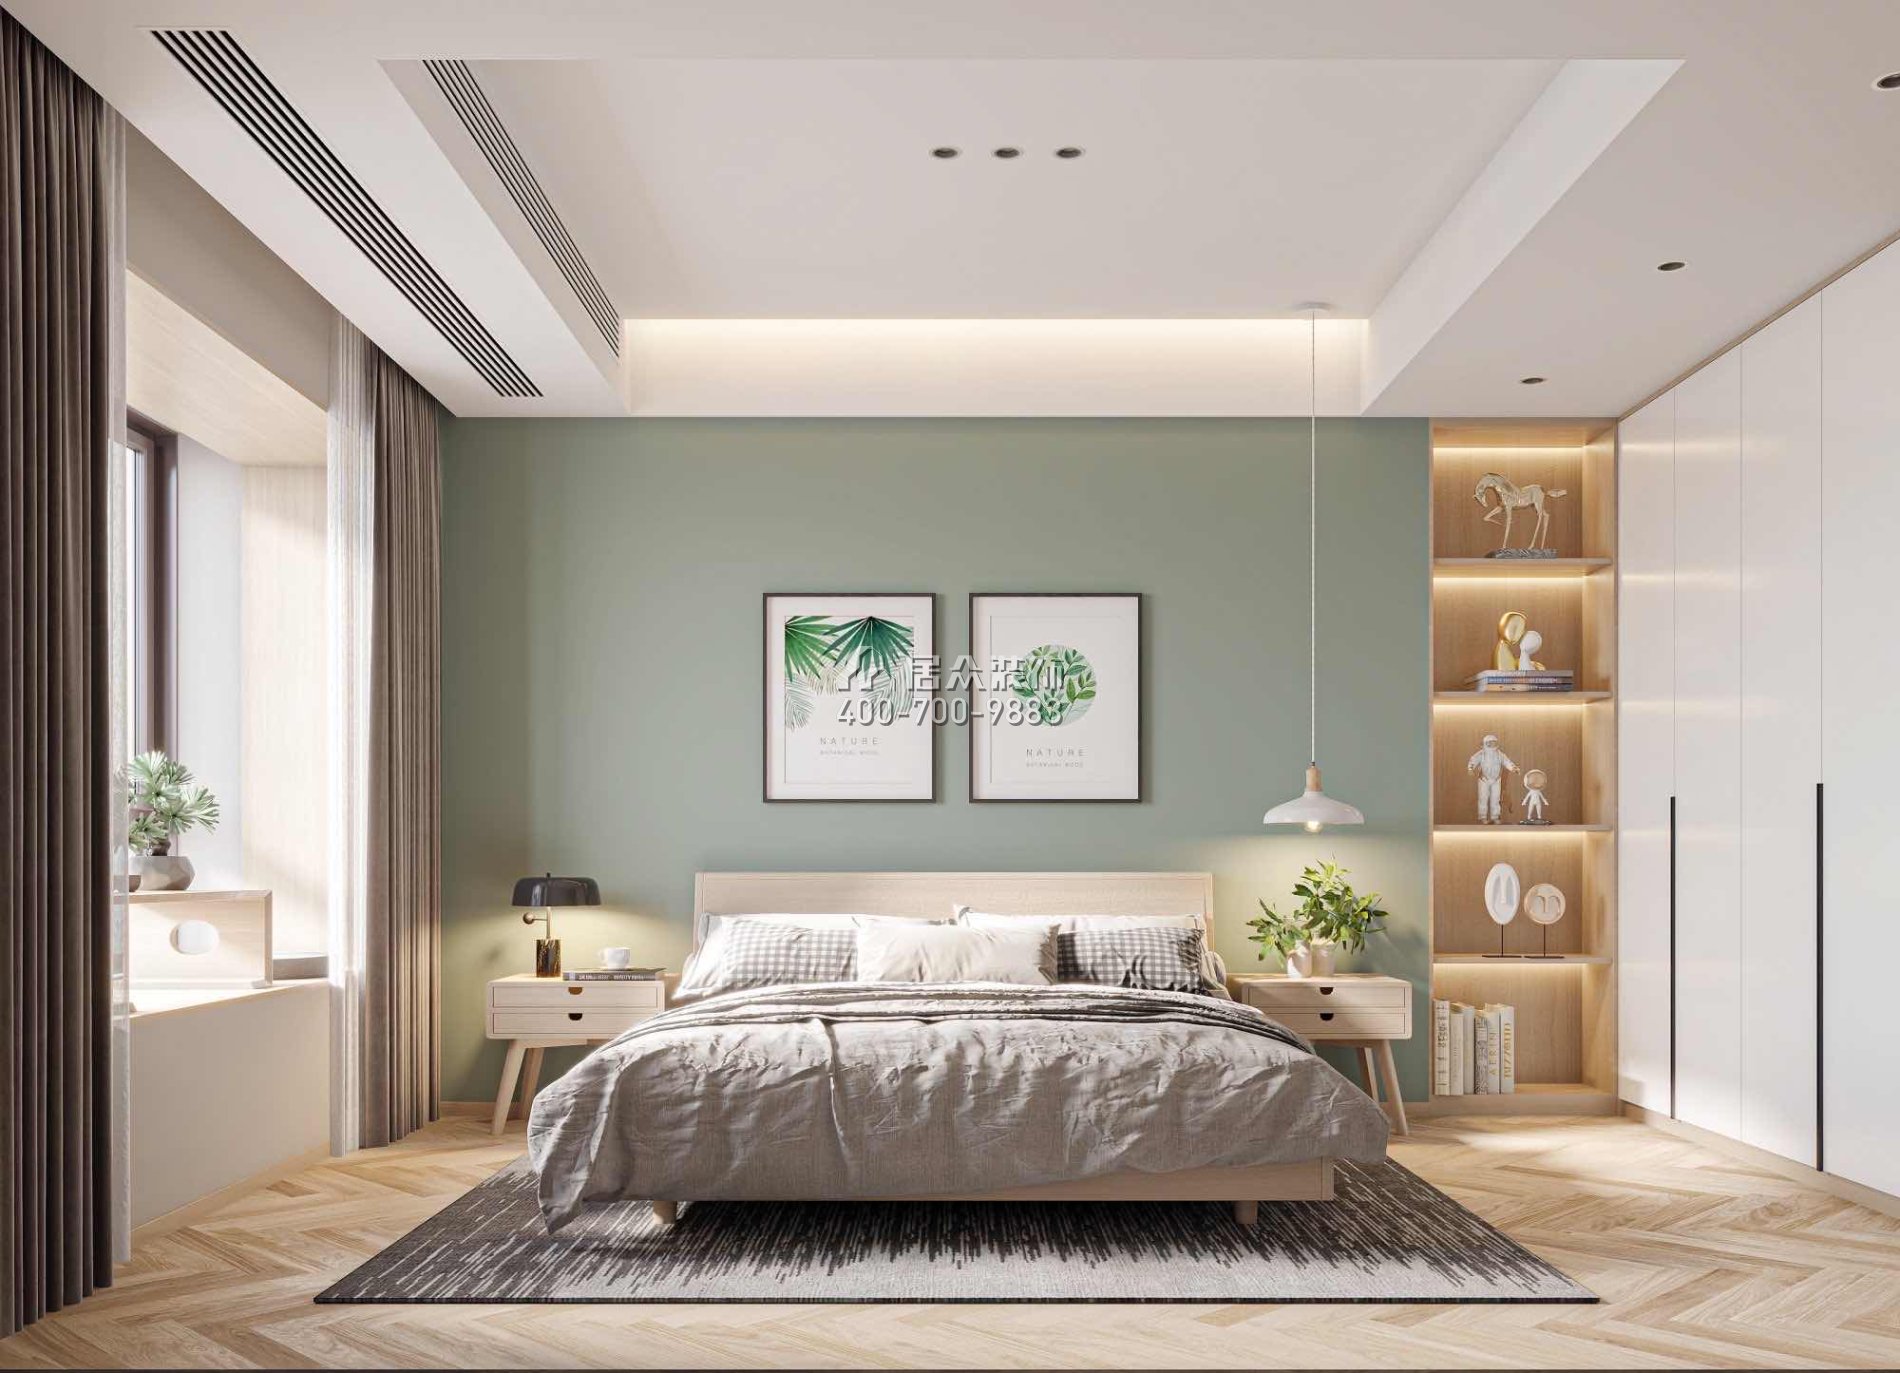 恒裕水墨兰亭370平方米中式风格复式户型卧室kok电竞平台效果图